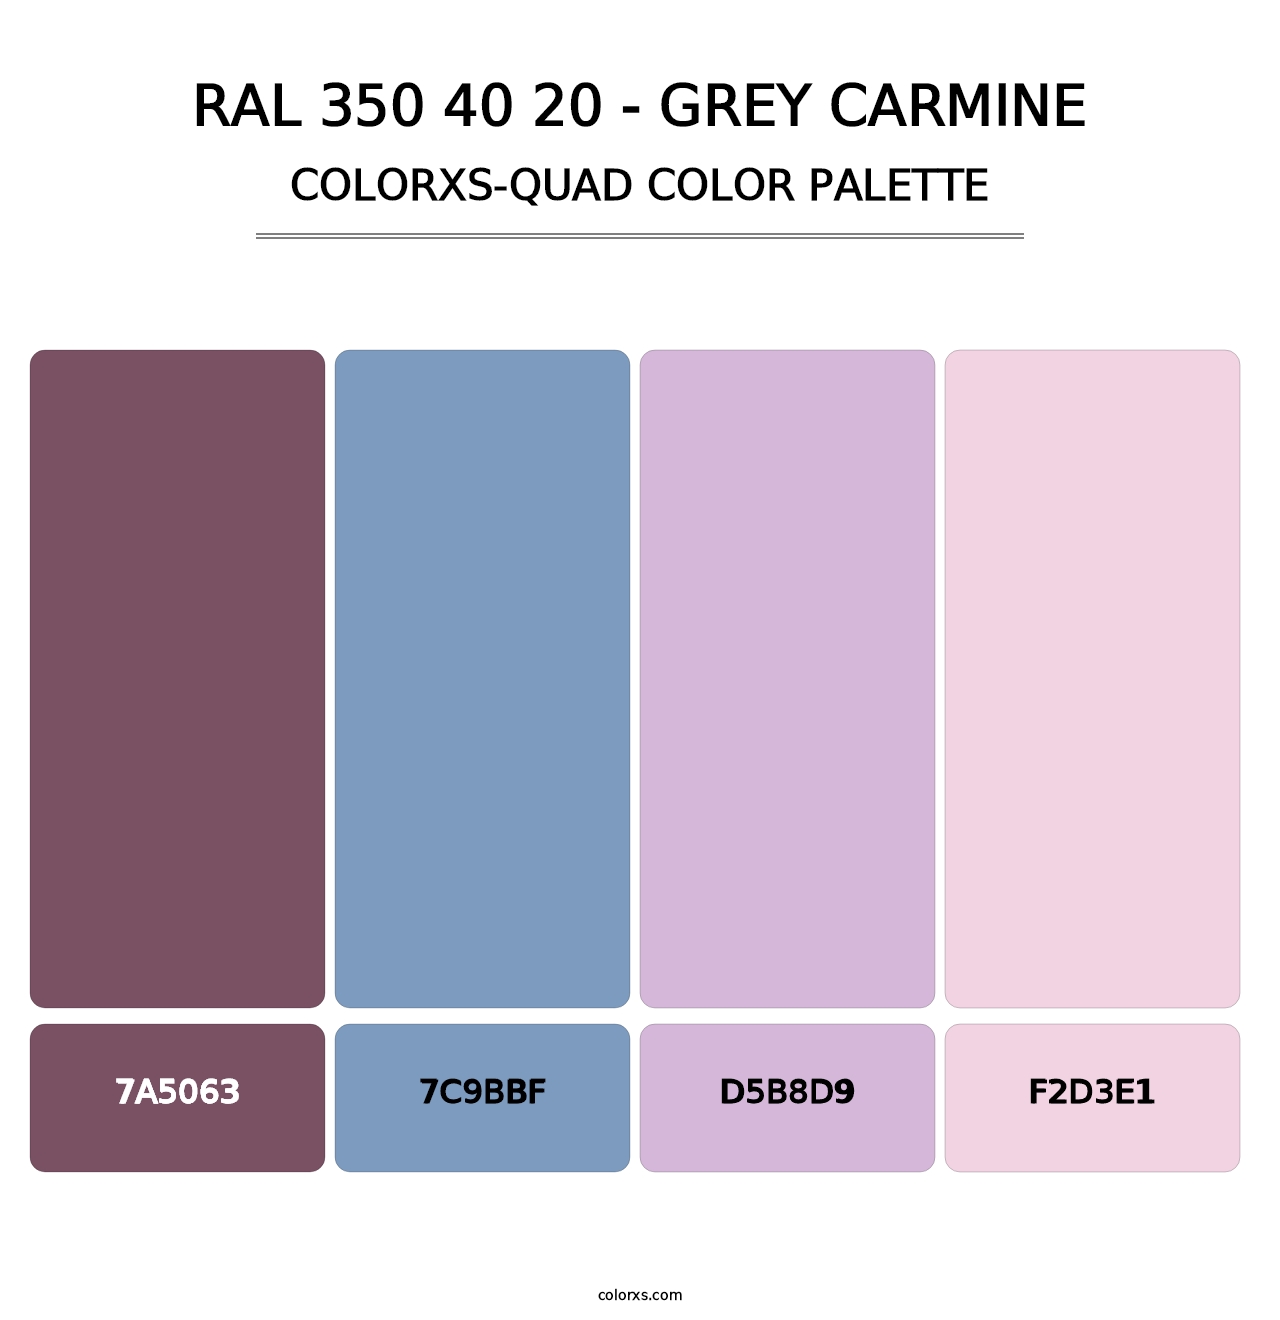 RAL 350 40 20 - Grey Carmine - Colorxs Quad Palette